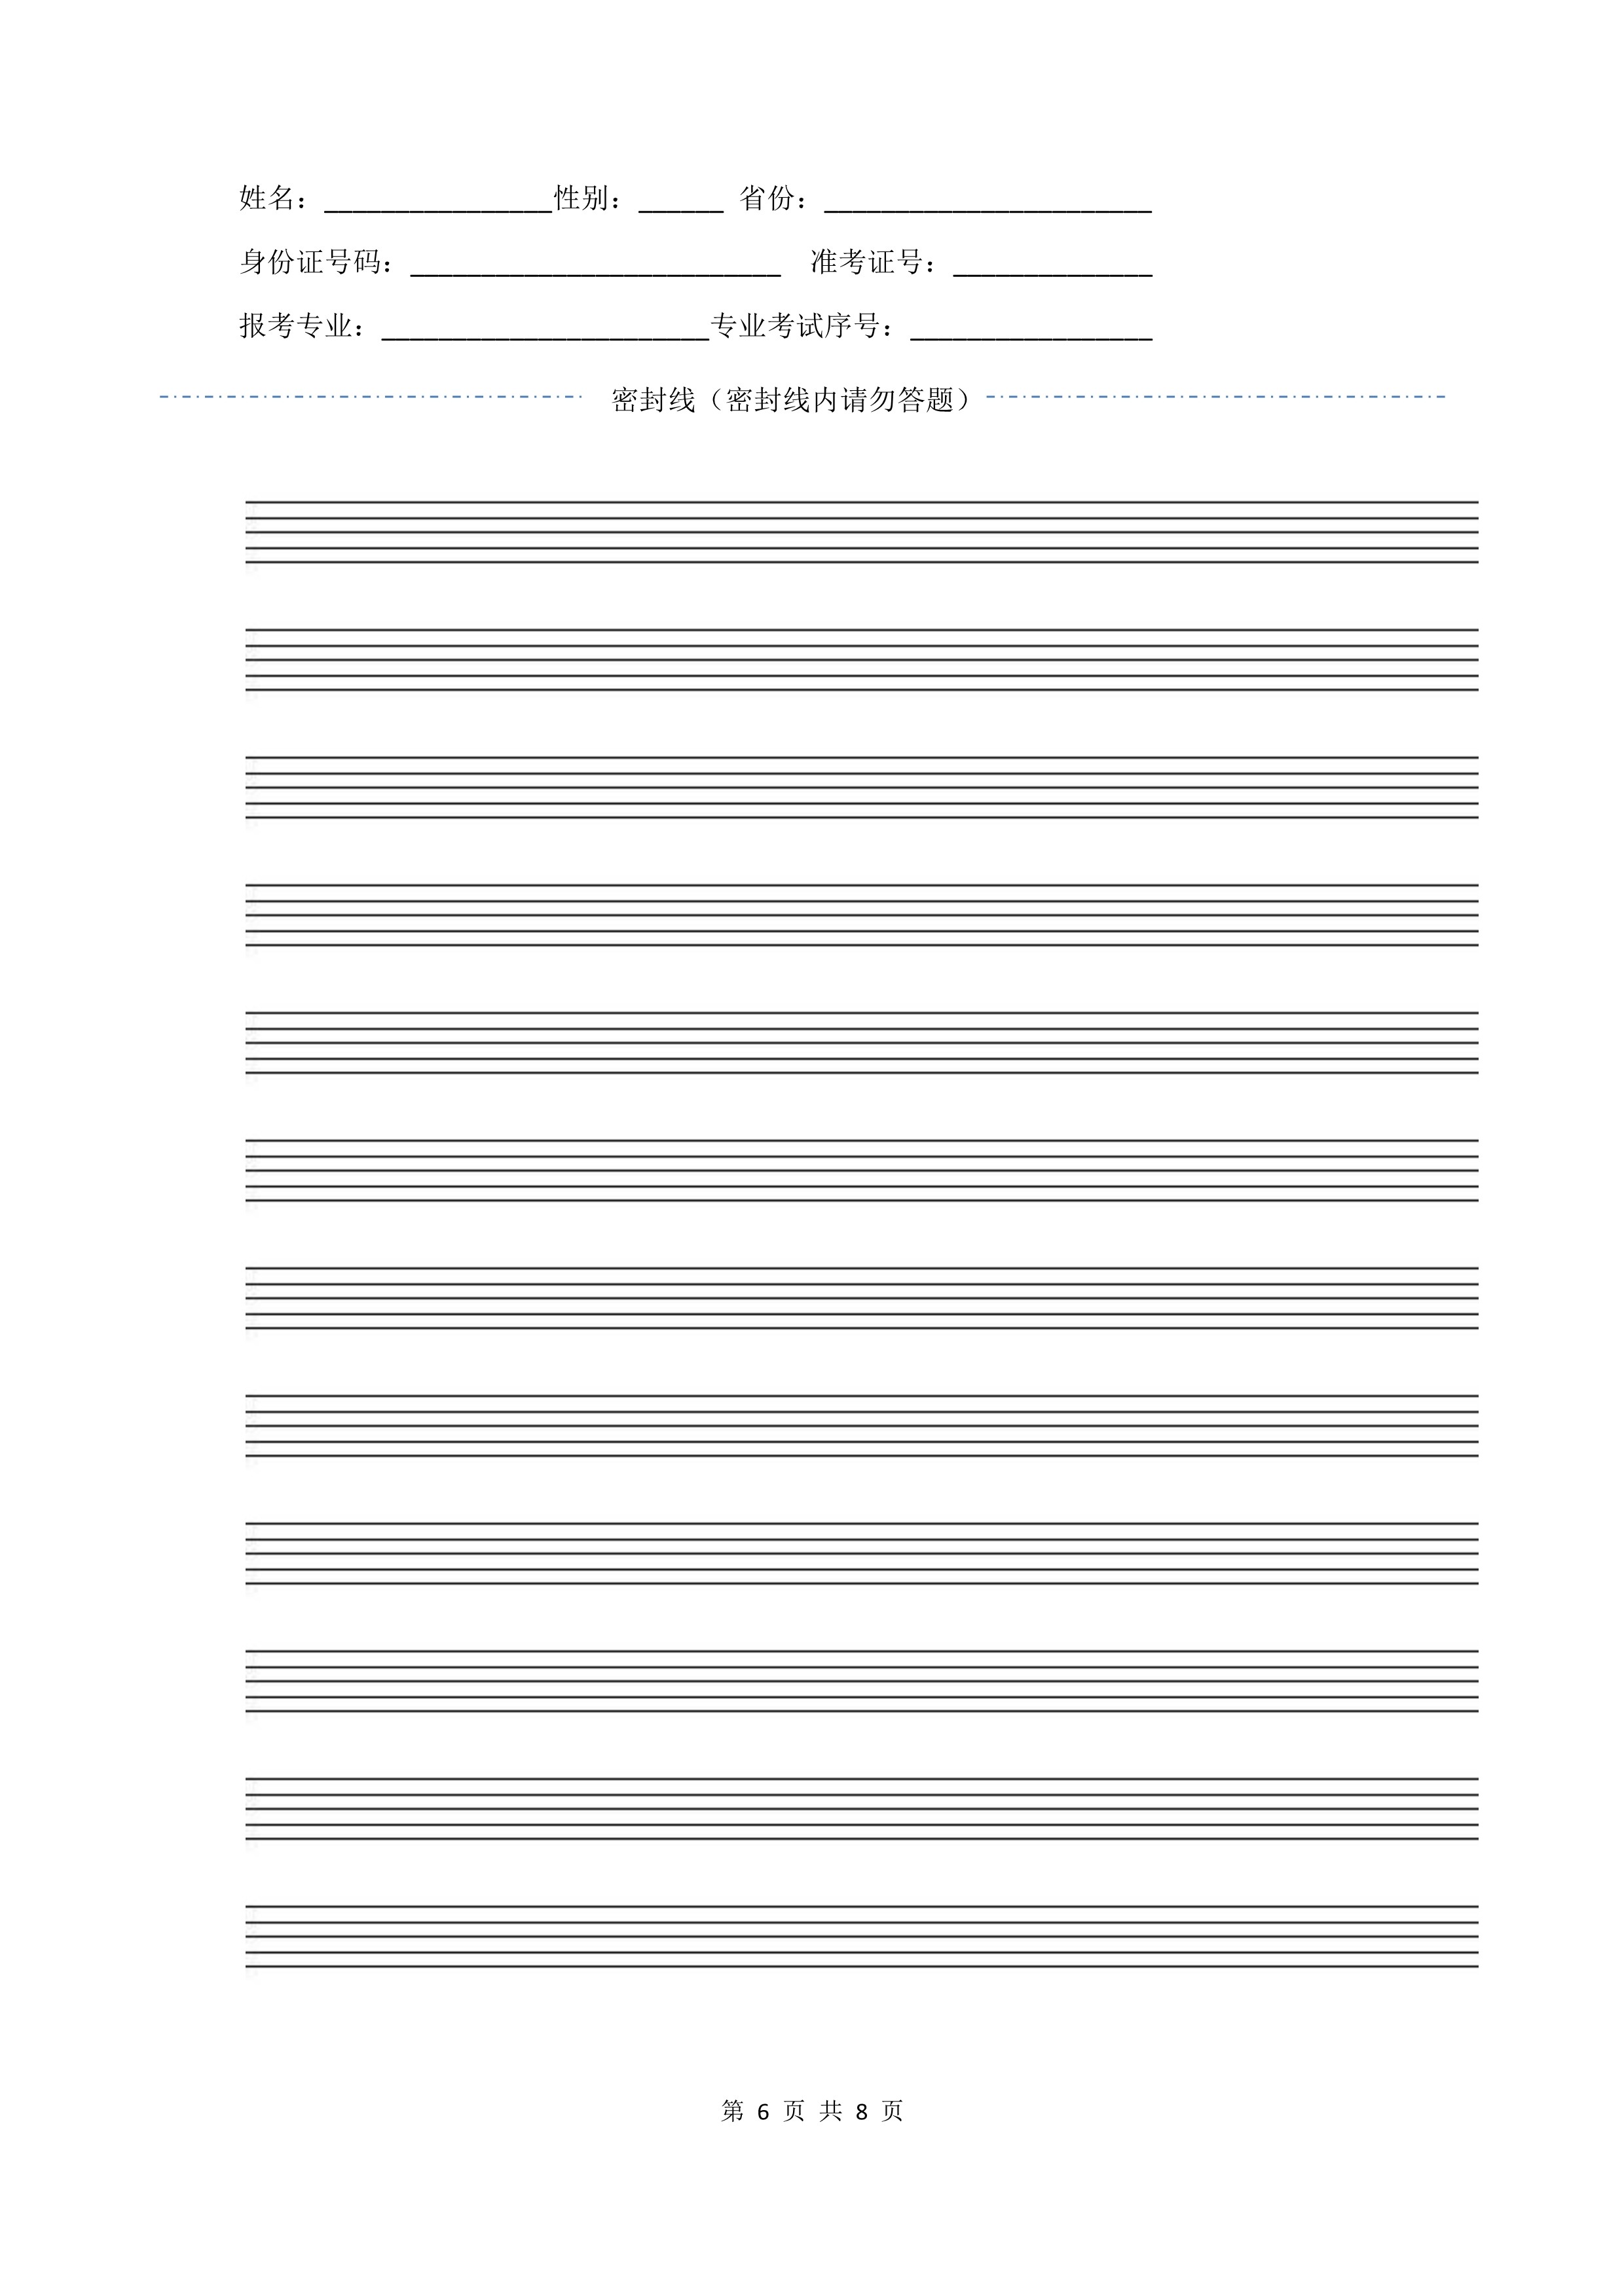 南京艺术学院2022年本科招生作曲与作曲技术理论、作曲与作曲技术理论（计算机作曲）专业《歌曲写作》科目考试答题纸及草稿纸_6.jpg